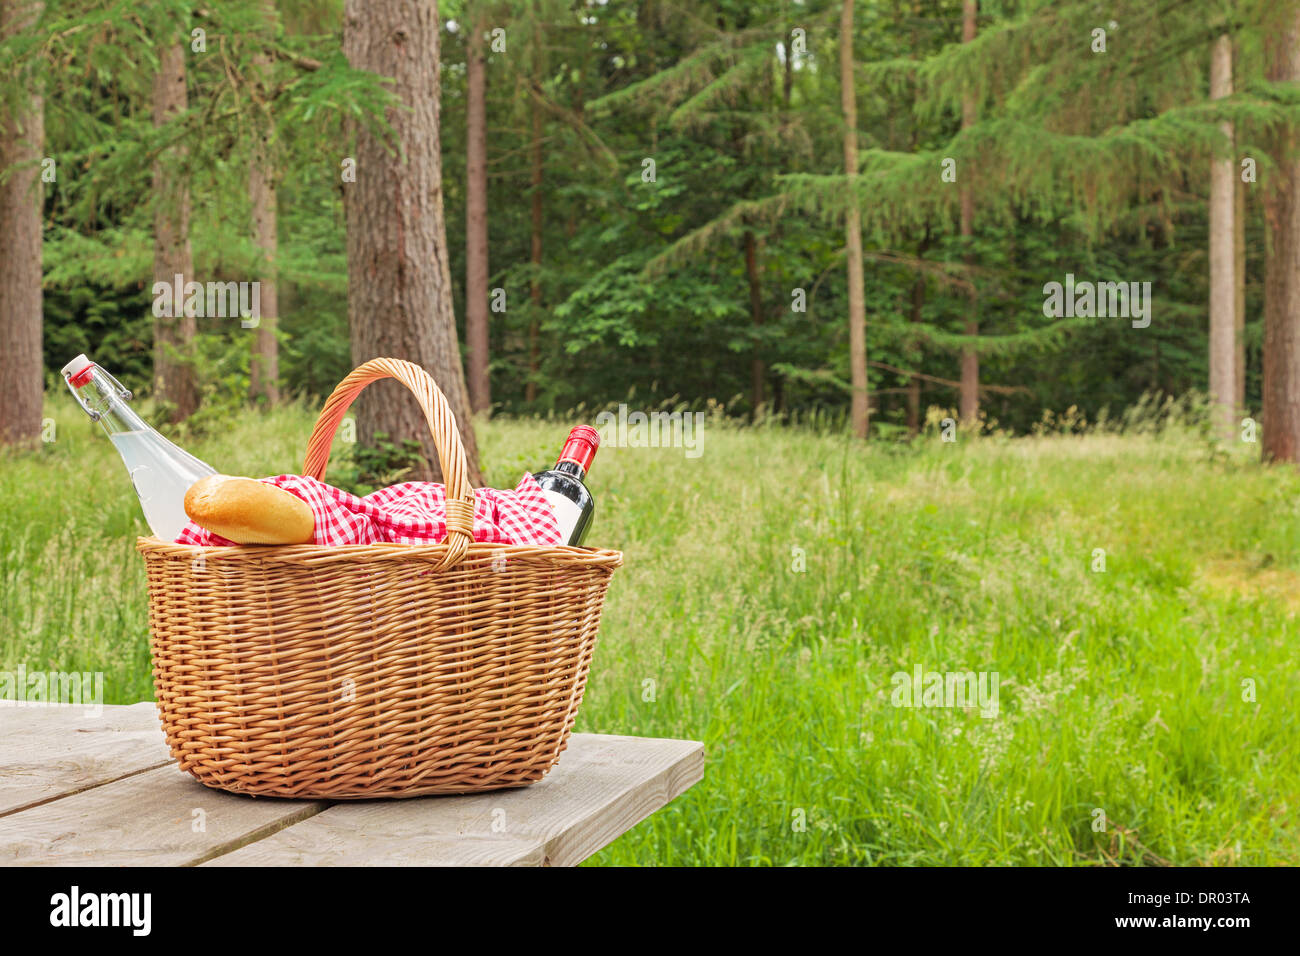 Ein Whicker Picknickkorb voller Essen und trinken auf einem Tisch in einer bewaldeten Umgebung an einem hellen Sommertag. Stockfoto